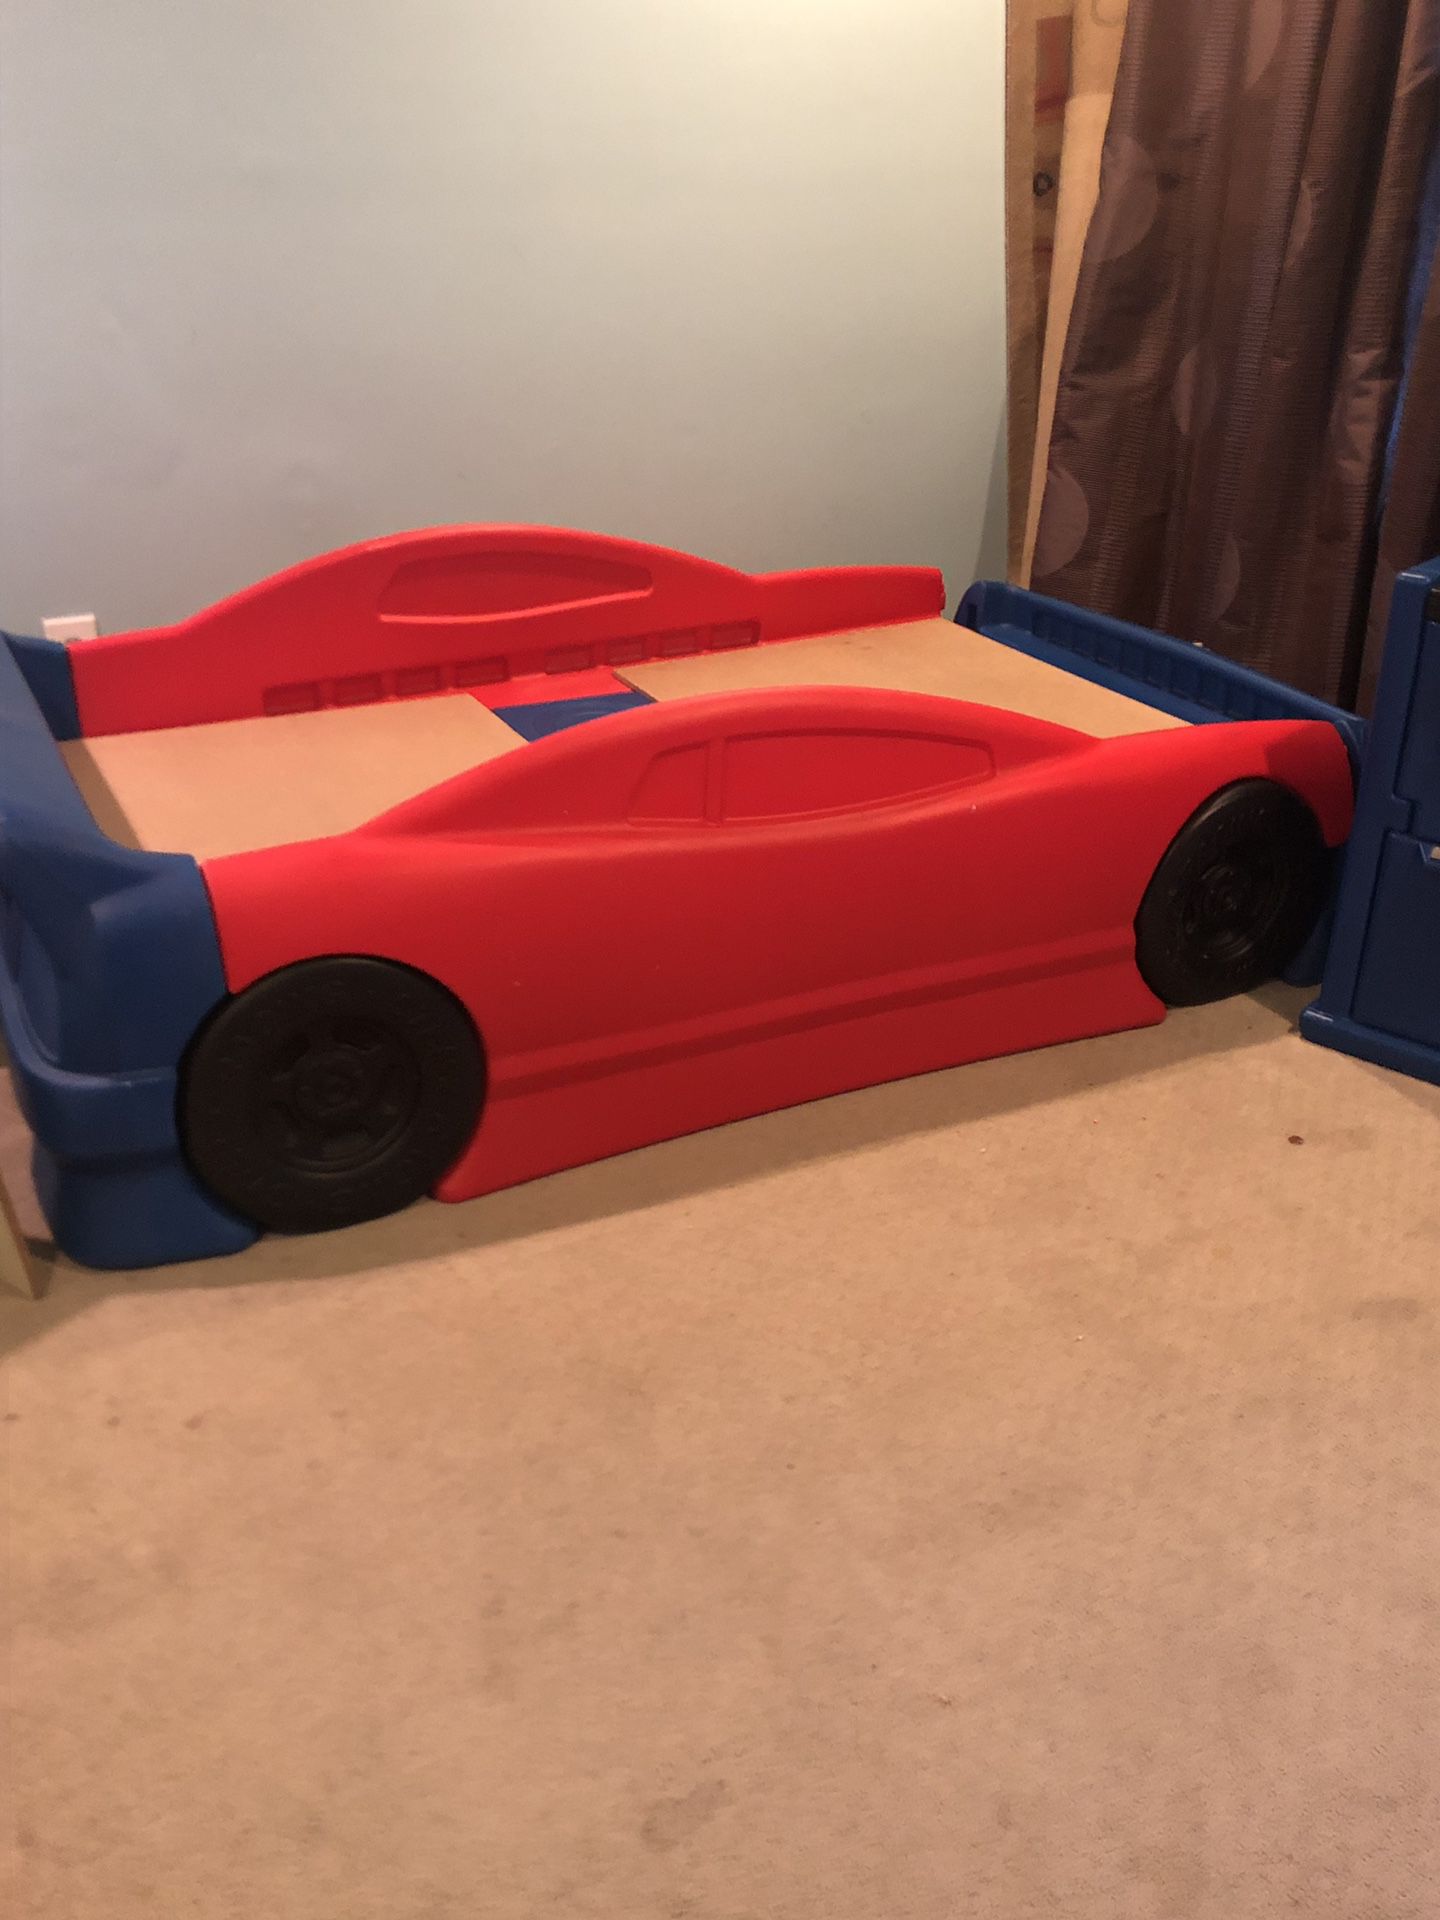 Twin size Race car bed w/utility storage bin.